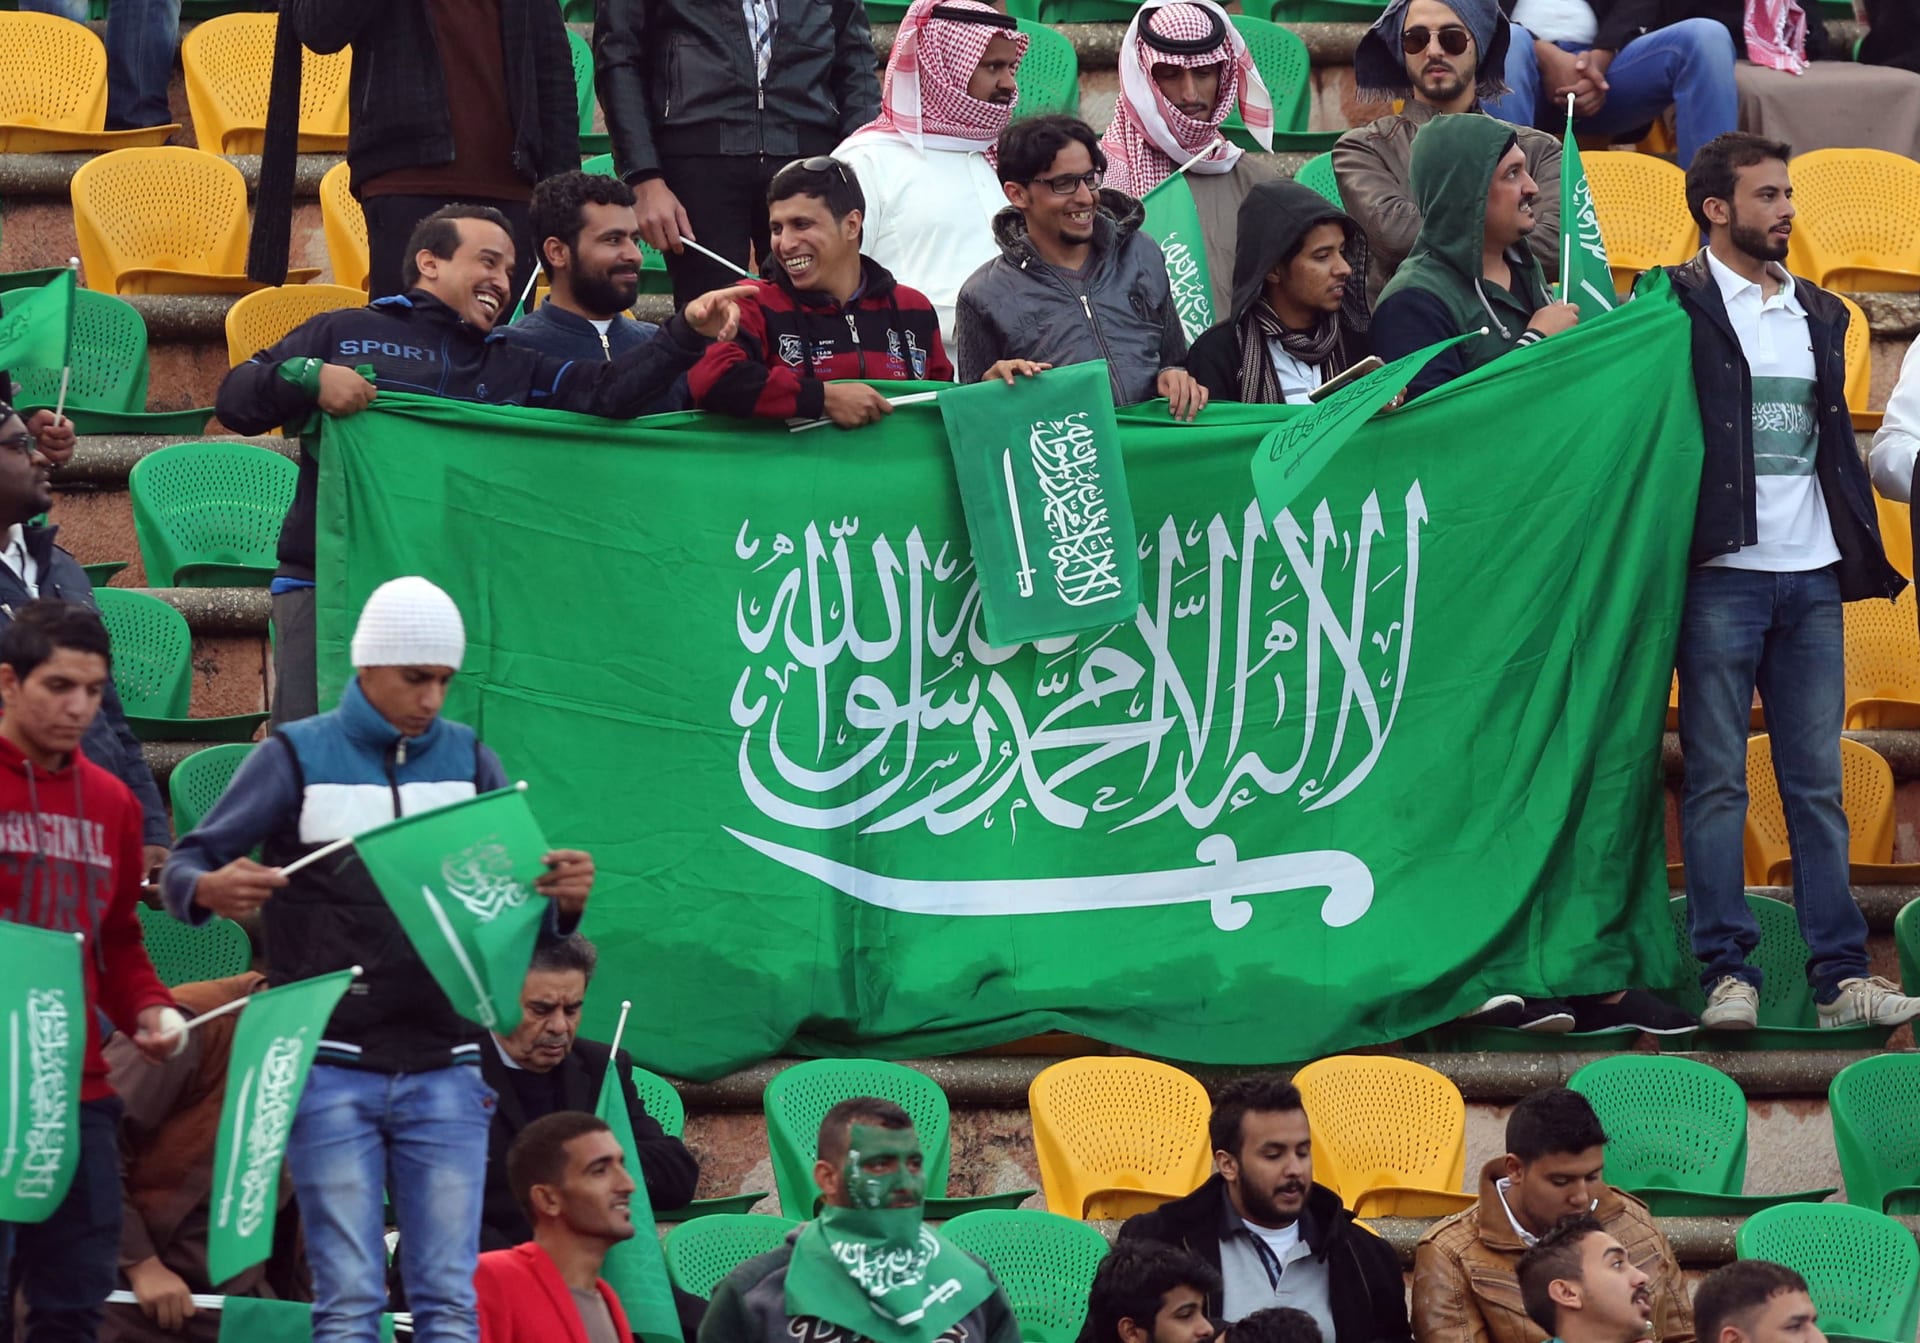 الاتحاد السعودي يعلن إرسال خطاب الترشح الرسمي لاستضافة كأس العالم 2034